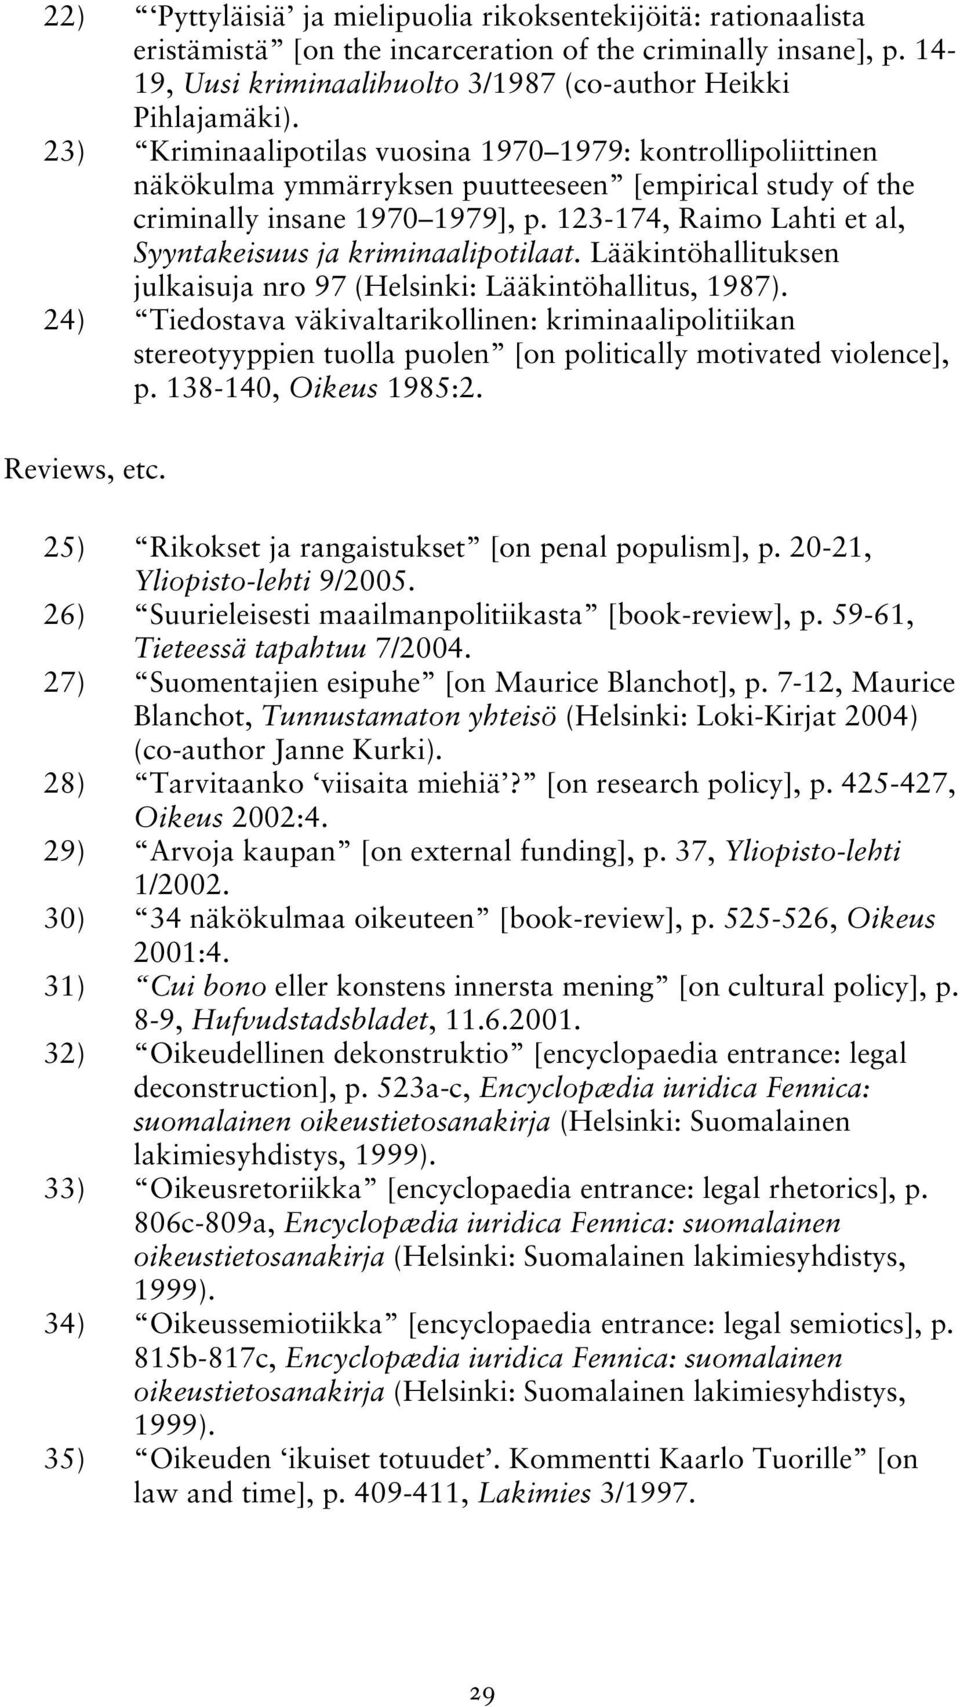 123-174, Raimo Lahti et al, Syyntakeisuus ja kriminaalipotilaat. Lääkintöhallituksen julkaisuja nro 97 (Helsinki: Lääkintöhallitus, 1987).